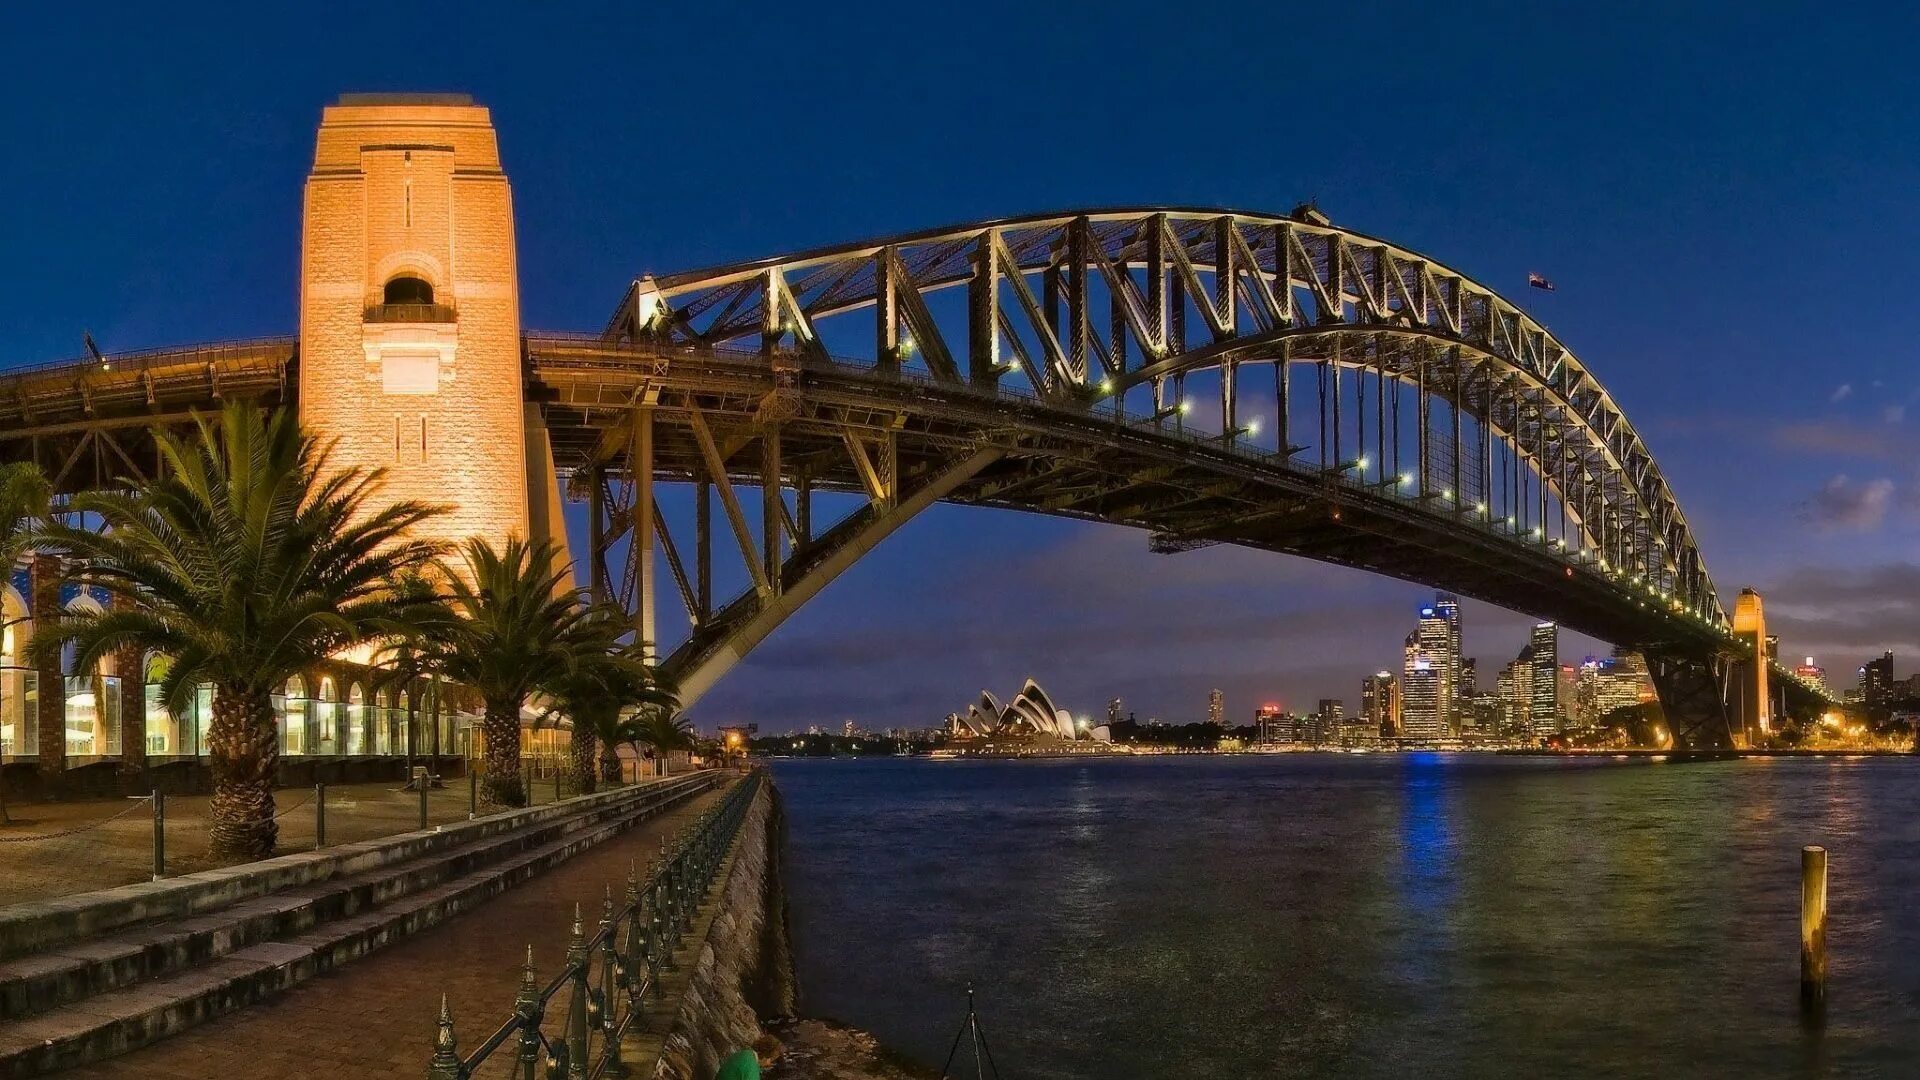 Man made world. Сиднейский мост Харбор-бридж. Мост Харбор бридж в Австралии. Сиднейский арочный мост Харбор-бридж.. Сидней мост Харбор-бридж фото.